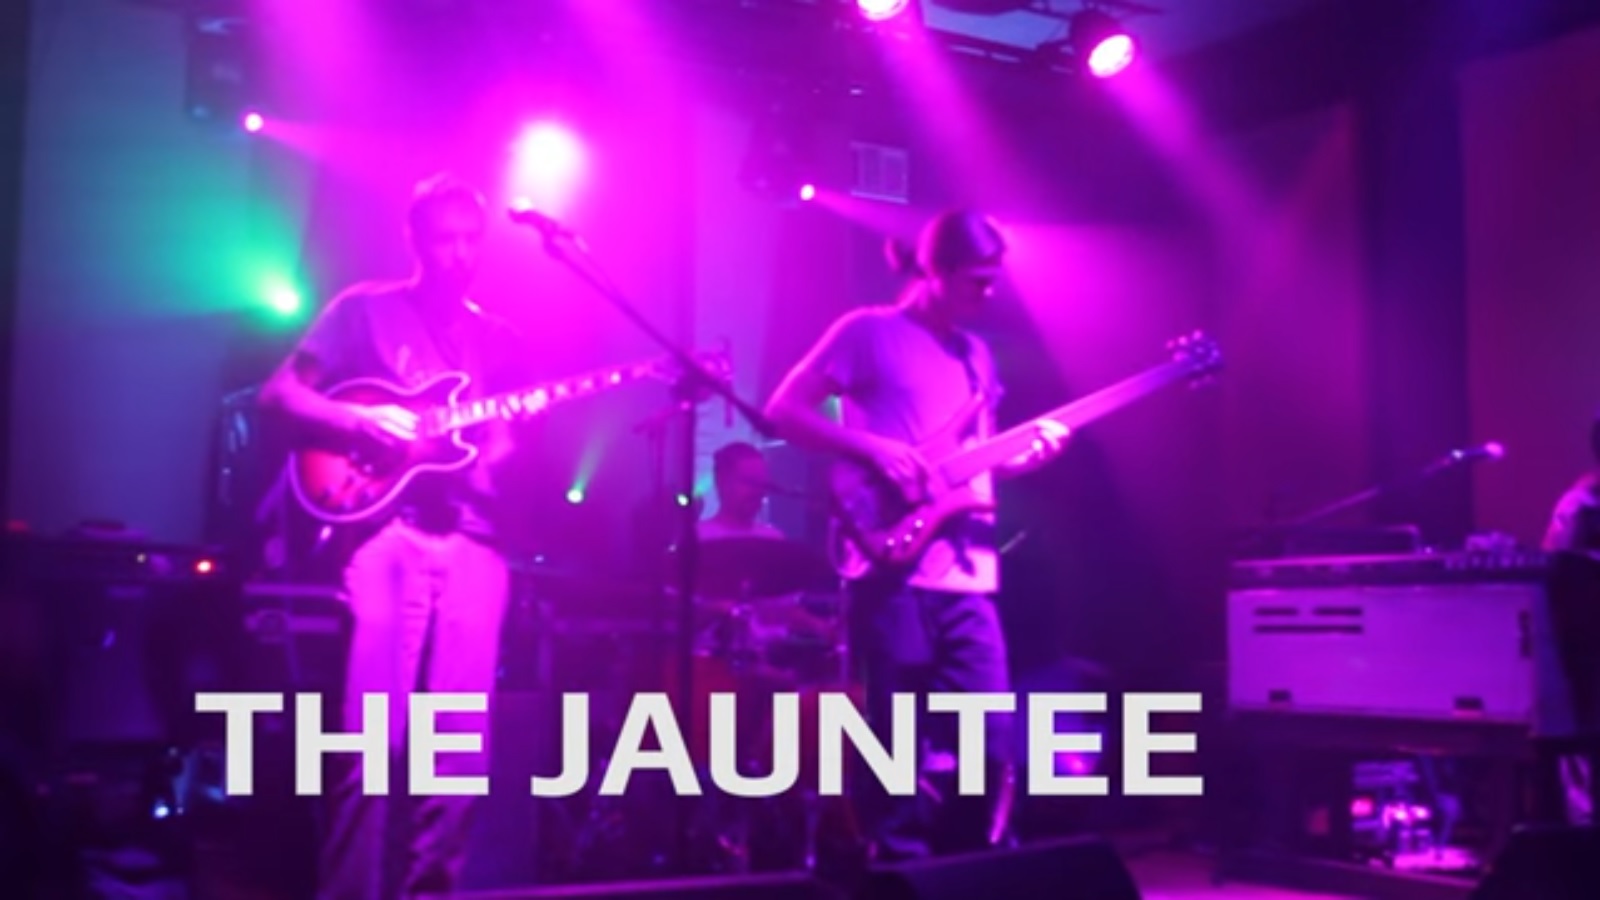 The Jauntee